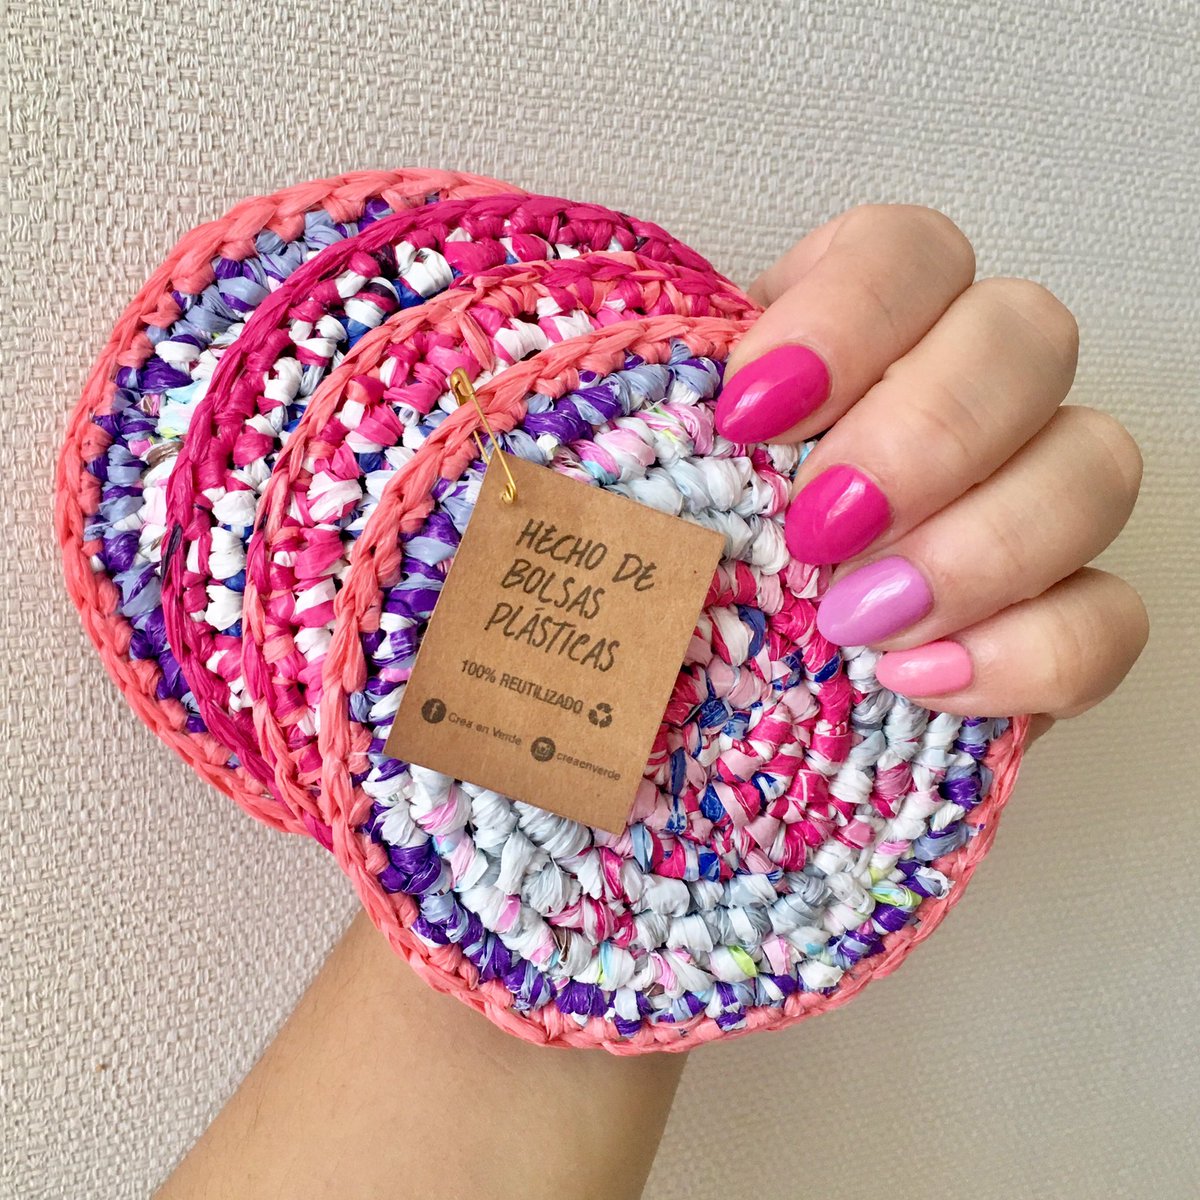 Posavasos disponibles hechos de bolsas plásticas tejidas a crochet 🌱
.
.
.
#creaenverde #zerowaste #tejido #handmade #upcycling #reciclajecreativo #sustentable  #ecocrochet #crochet #chilesinplásticos #chaobolsasplásticas #posavasos #ecofriendly